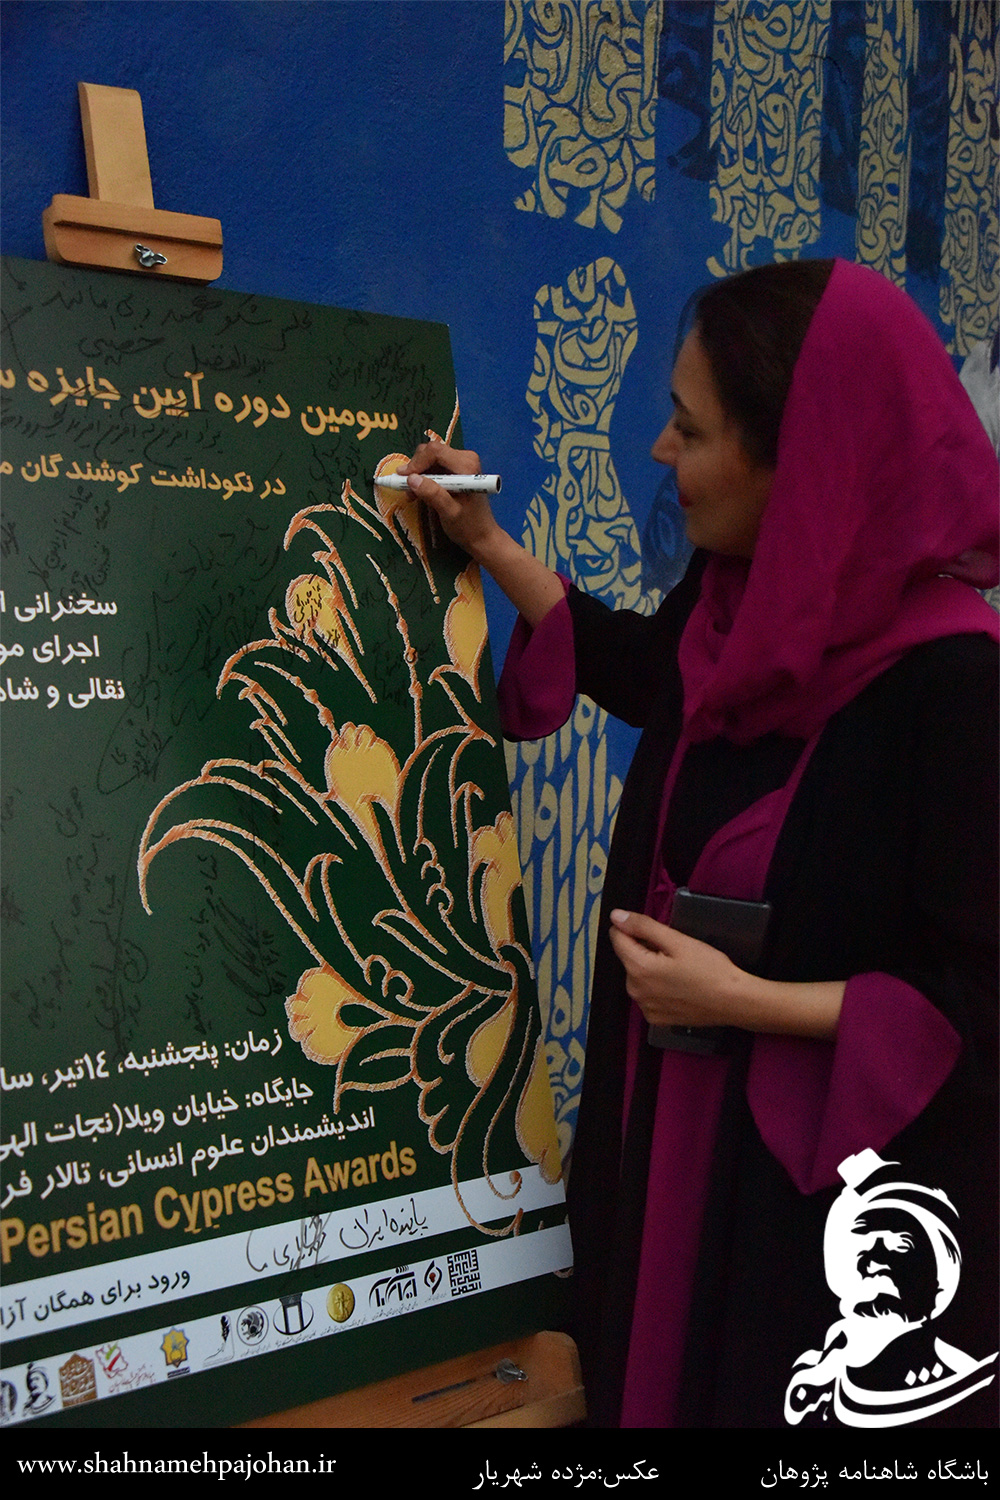 نازلی بخشایش در حال امضای یادبود جایزه سرو ایرانی